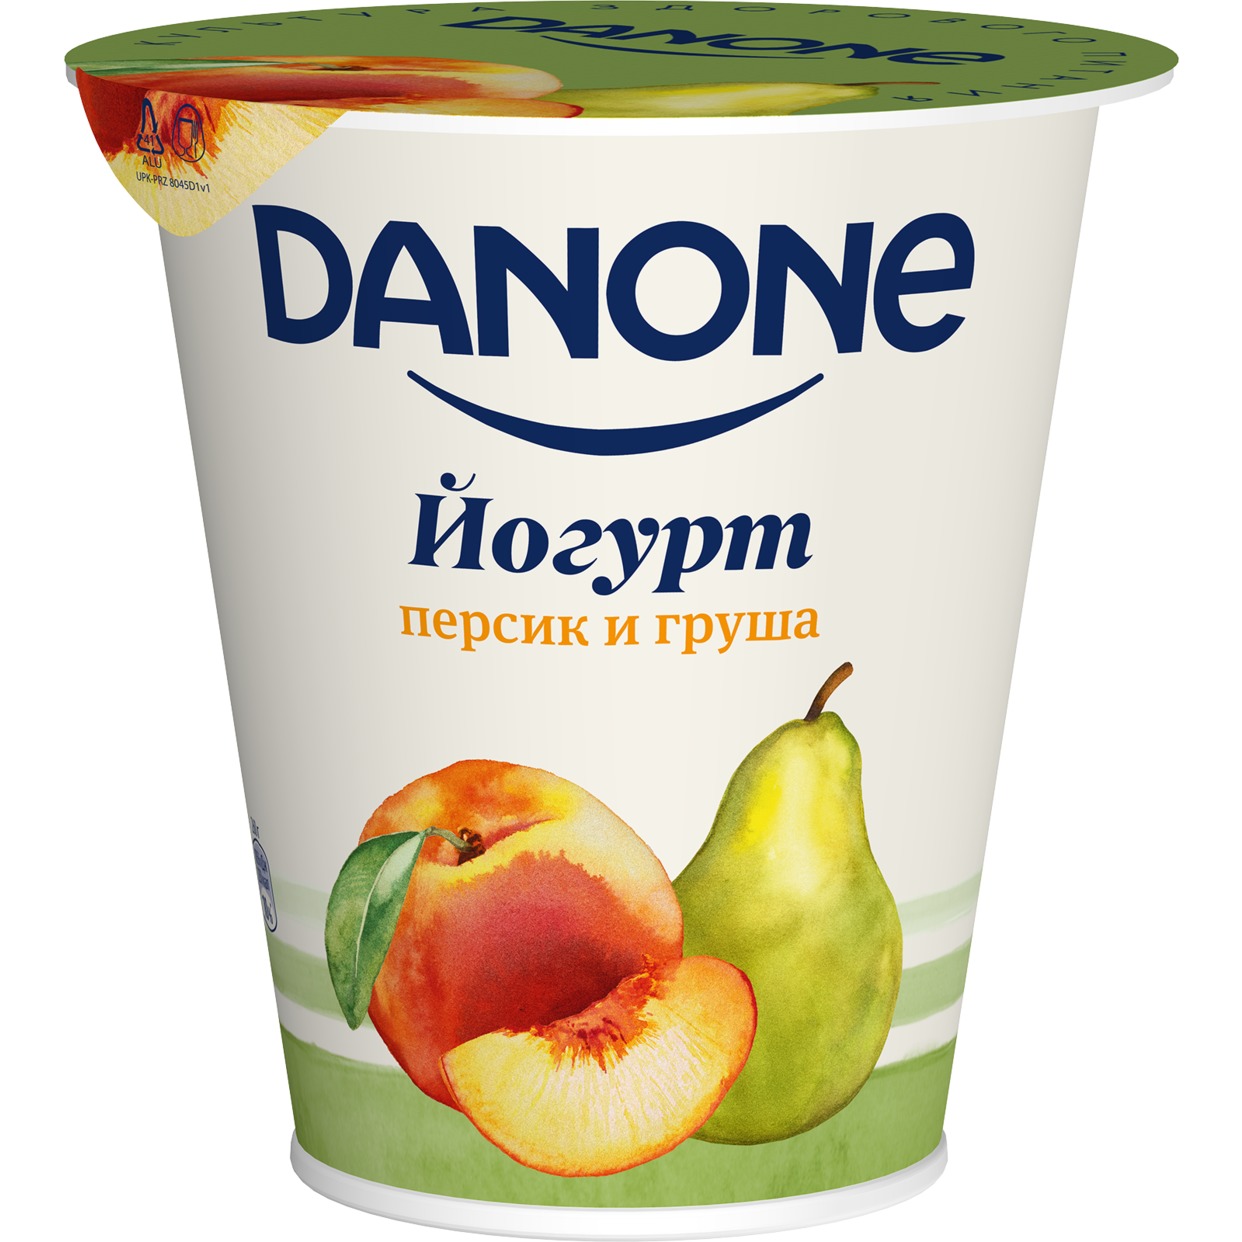 БЗМЖ Данон Йогурт с персиком и грушей, с массовой долей жира 2,8% 260г по акции в Пятерочке